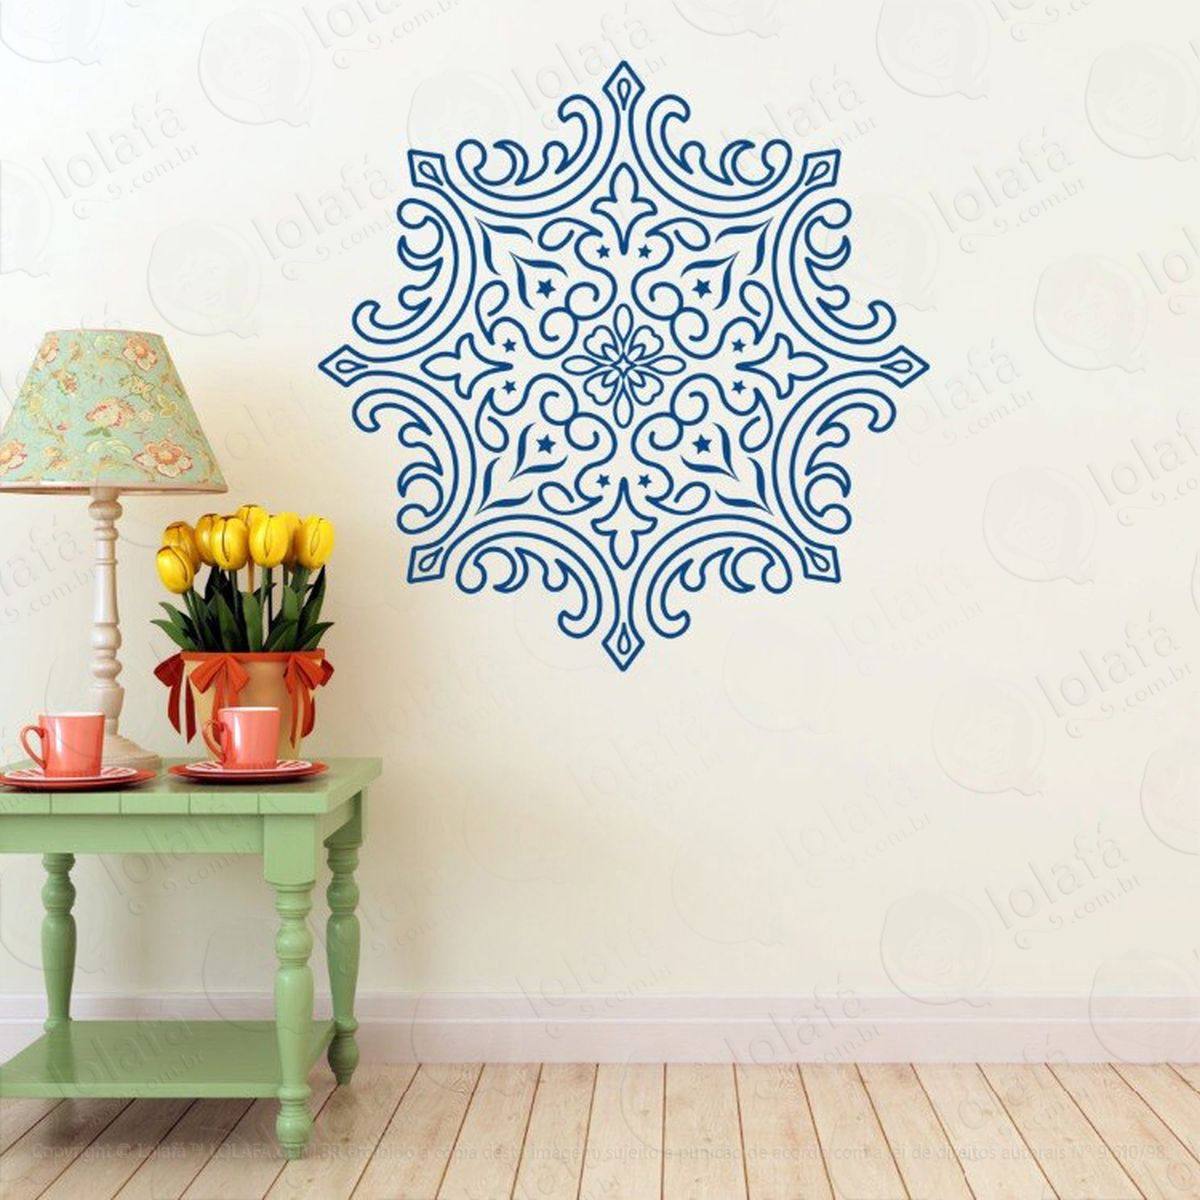 mandala seja bondade adesivo de parede decorativo para casa, quarto, sala e vidro - mod:318